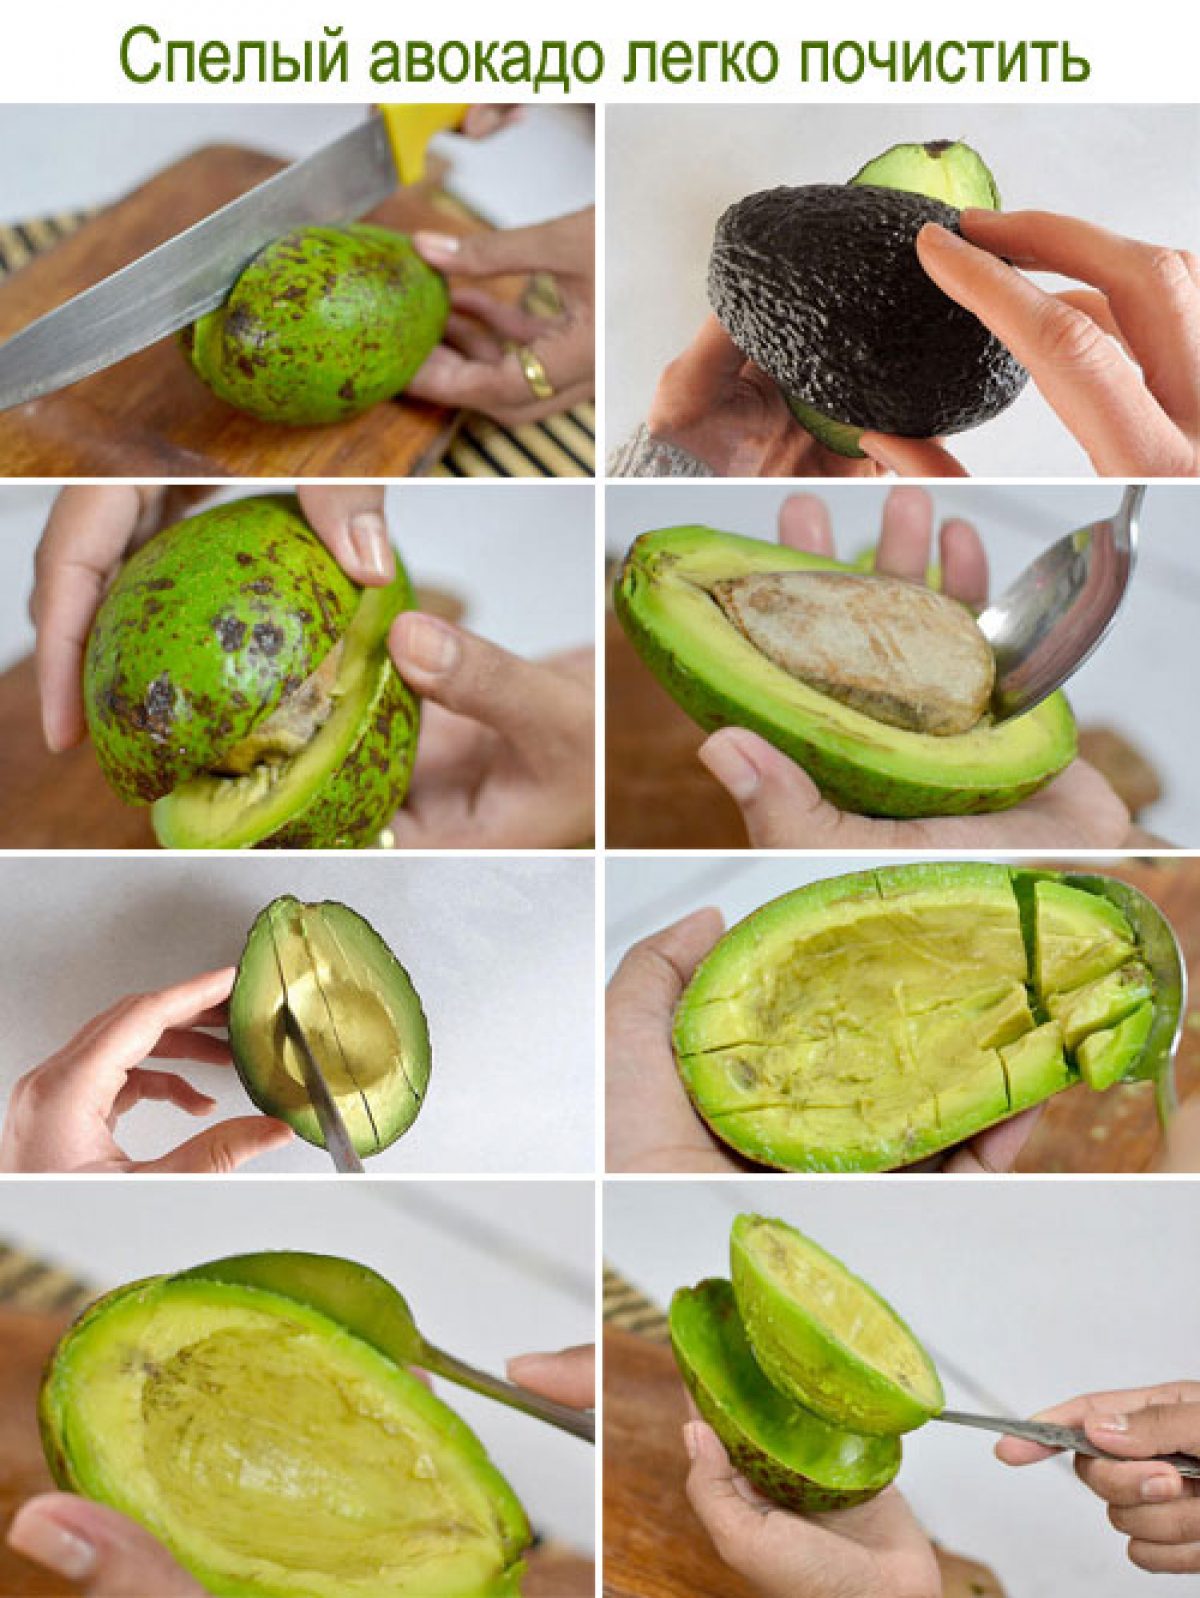 Как кушают авокадо правильно в домашних условиях. Как чистить авокадо. Как почистить авокадо. Как кушать авокадо. Как кушать авокадо правильно.